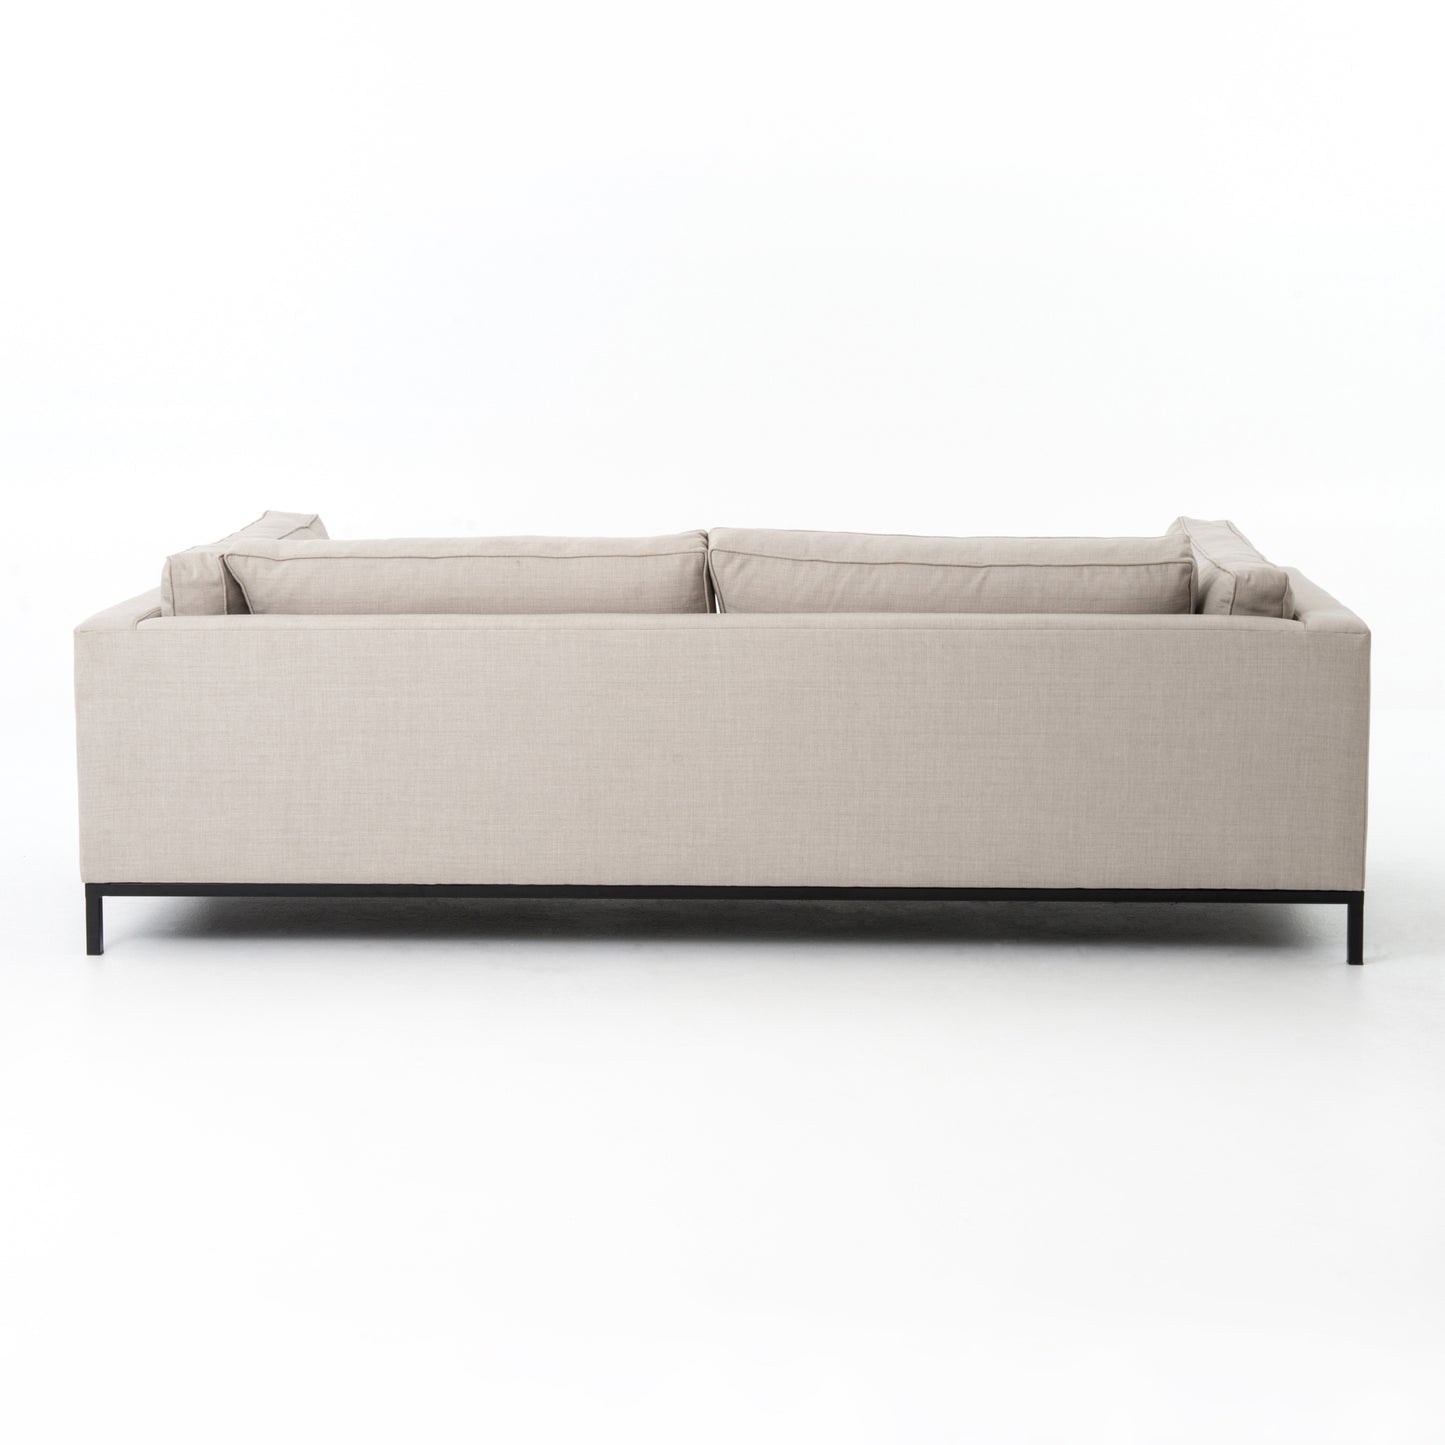 Allison Modern Classic Upholstered Sofa